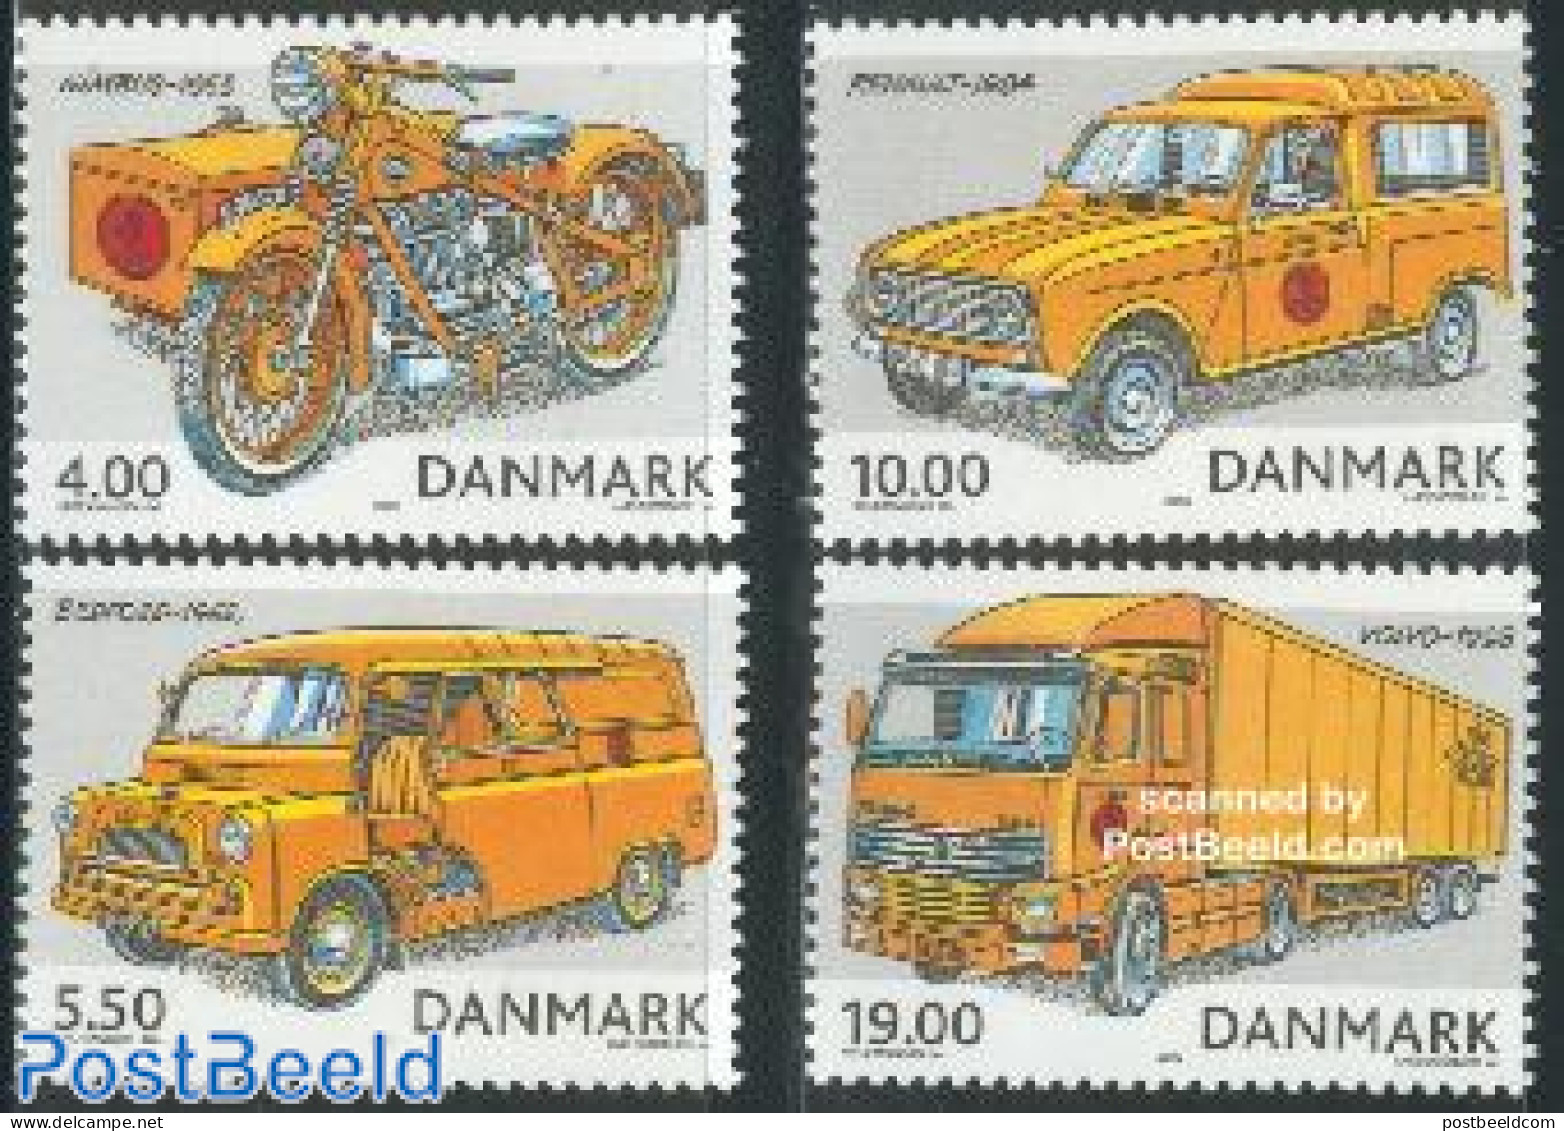 Denmark 2002 Postal Transport 4v, Mint NH, Transport - Post - Automobiles - Motorcycles - Ongebruikt